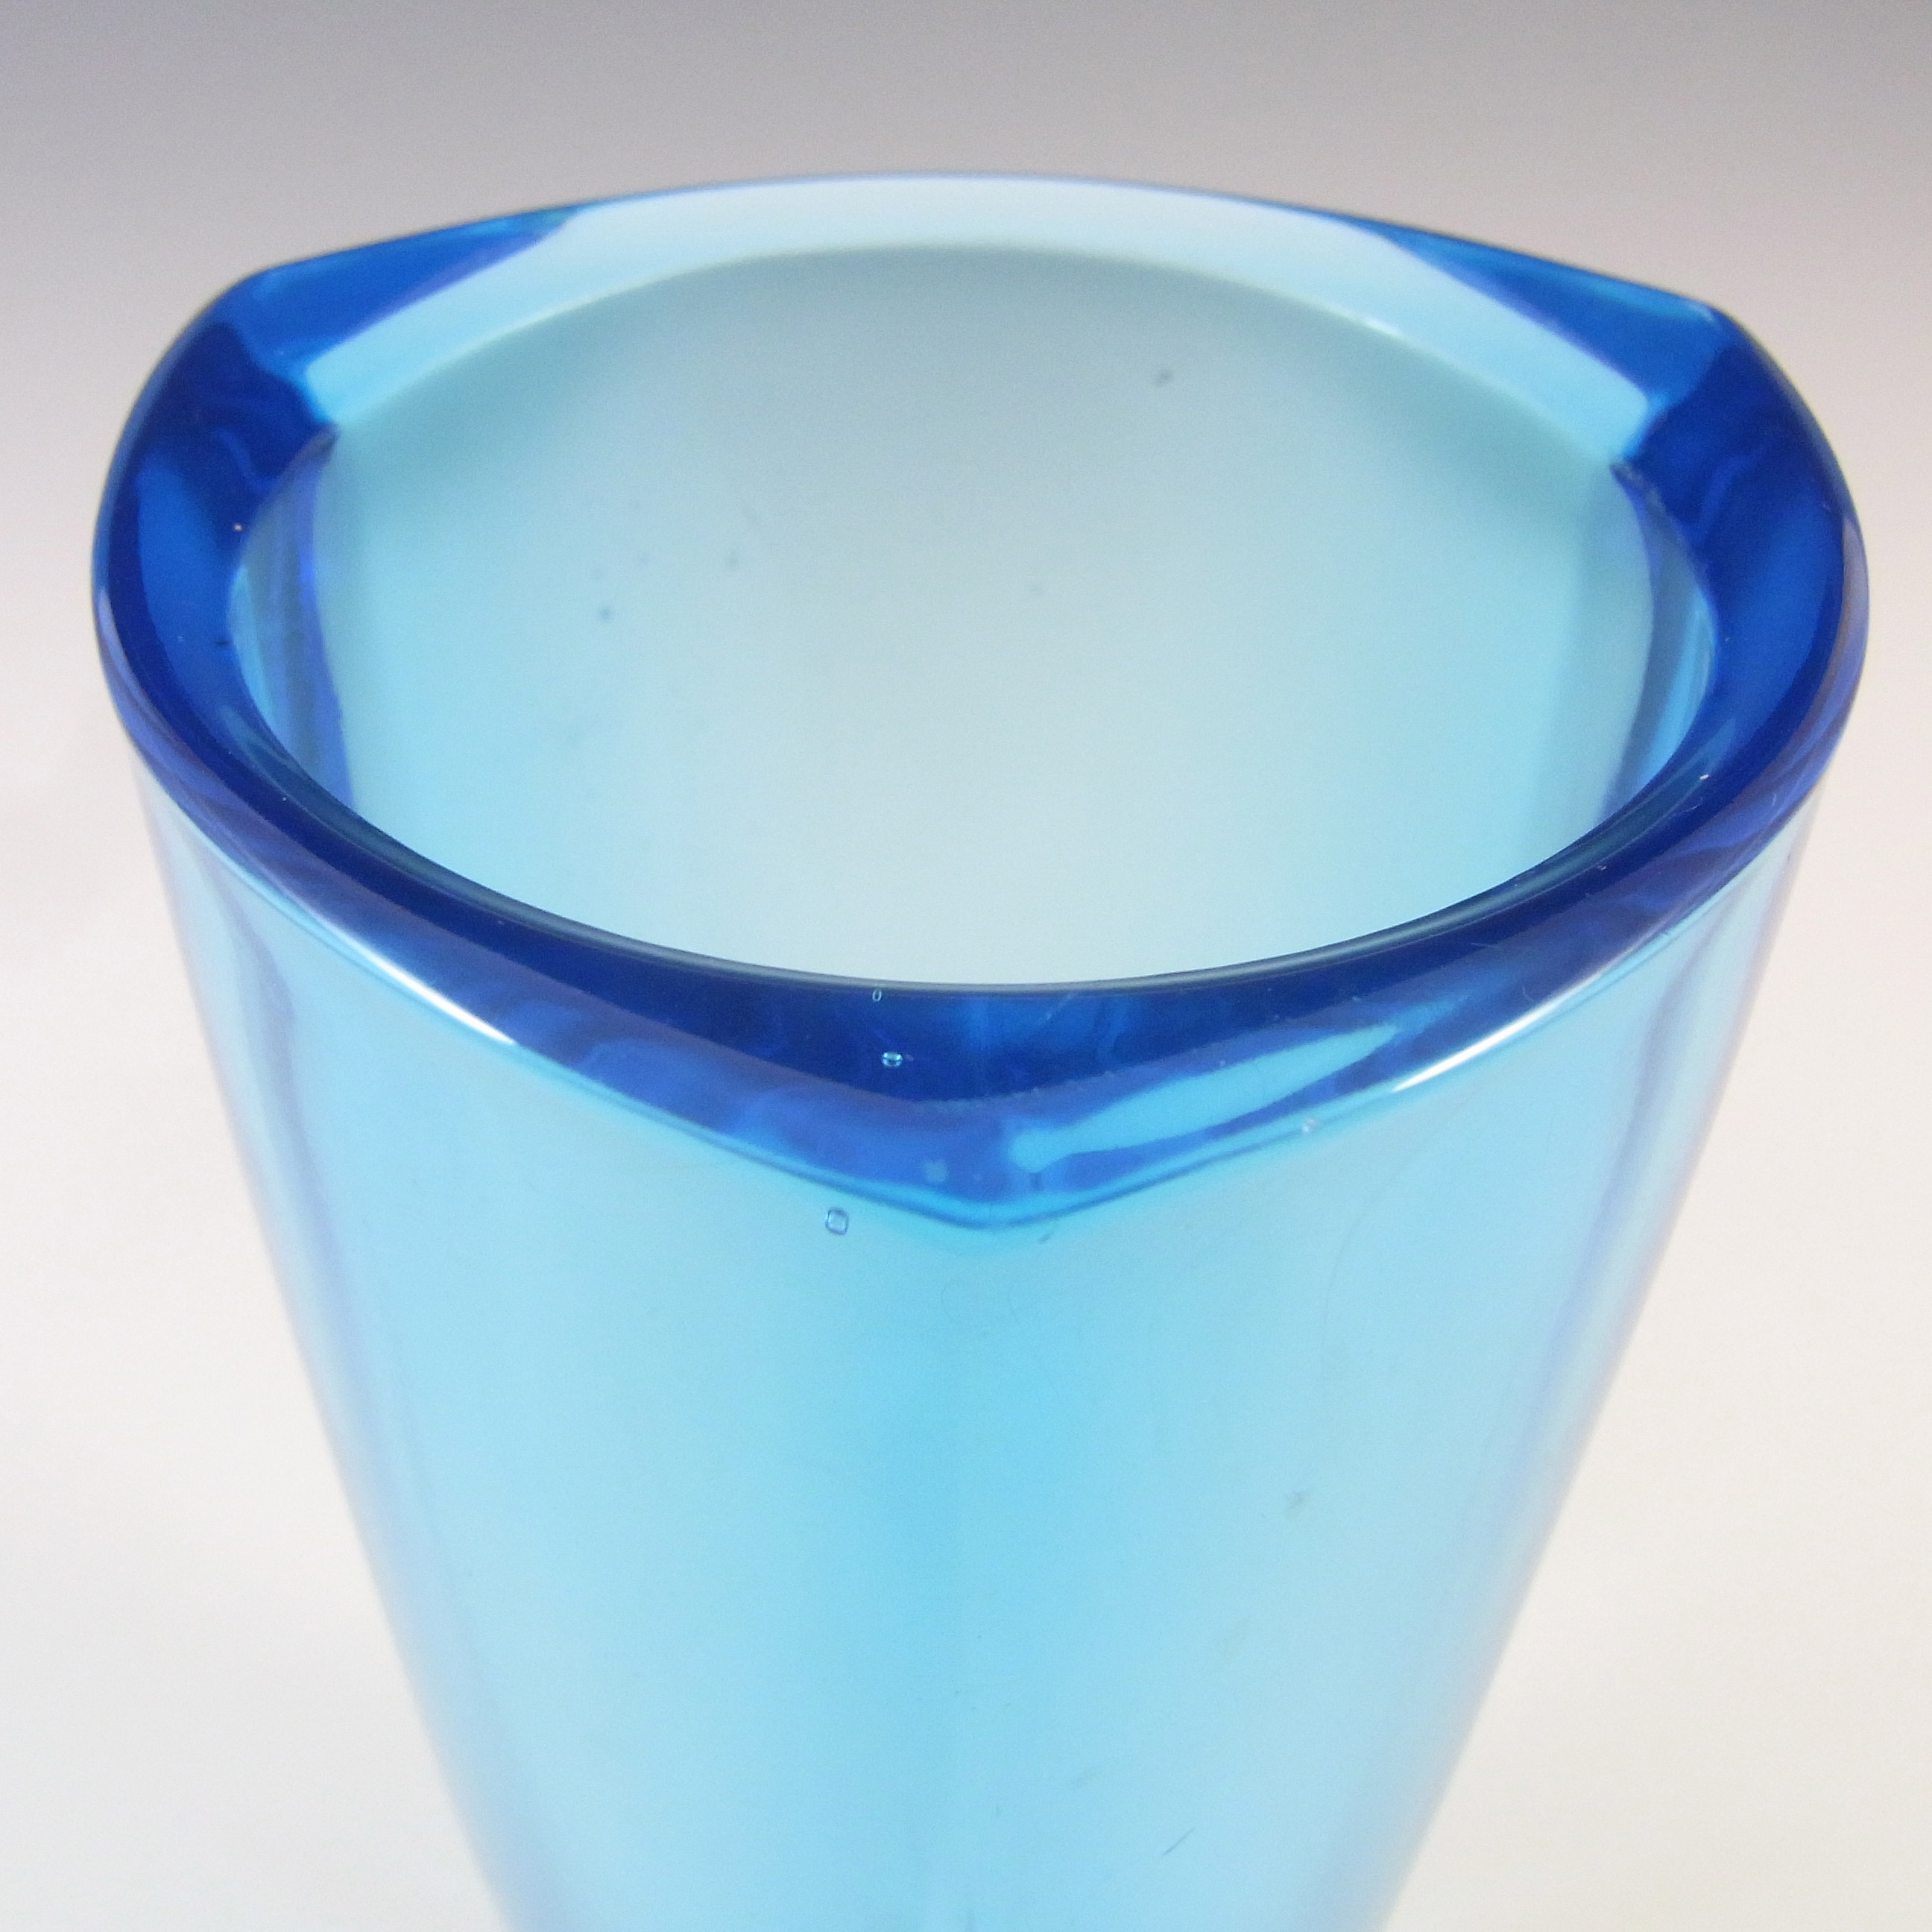 Sklo Union Rudolfova Blue Glass Vase by Václav Hanuš #12996 - Click Image to Close